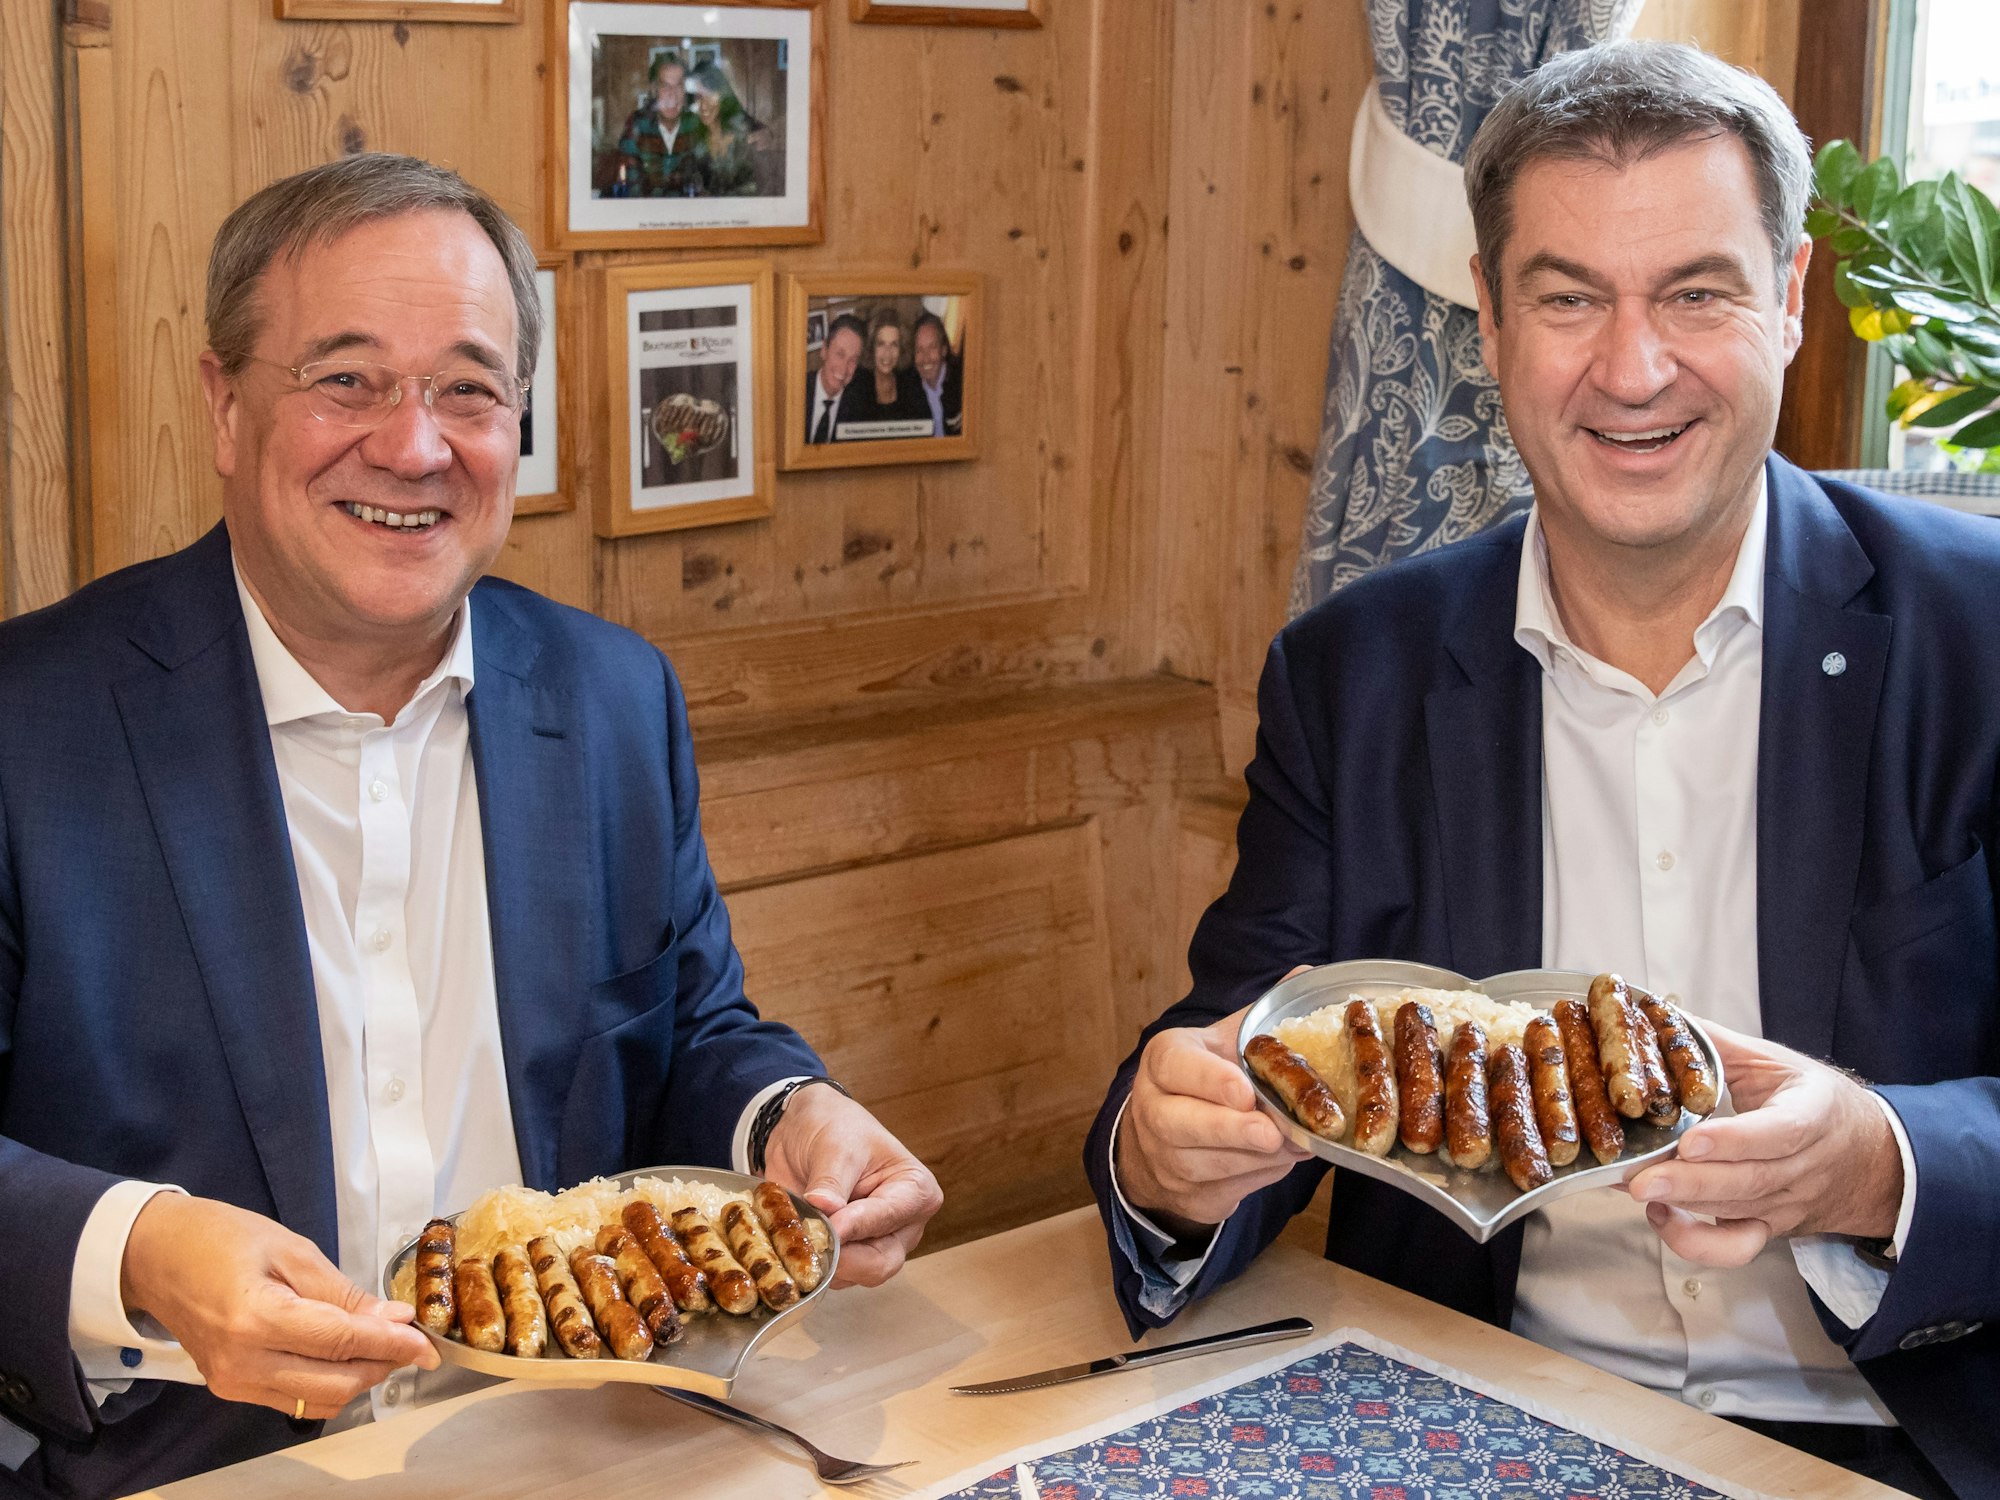 Markus Söder (r), CSU-Parteivorsitzender und Ministerpräsident von Bayern, und Armin Laschet, Unions-Kanzlerkandidaten, CDU-Vorsitzender und Ministerpräsident von Nordrhein-Westfalen, essen zusammen in einem Bratwurst-Restaurant Nürnberger Würstchen.